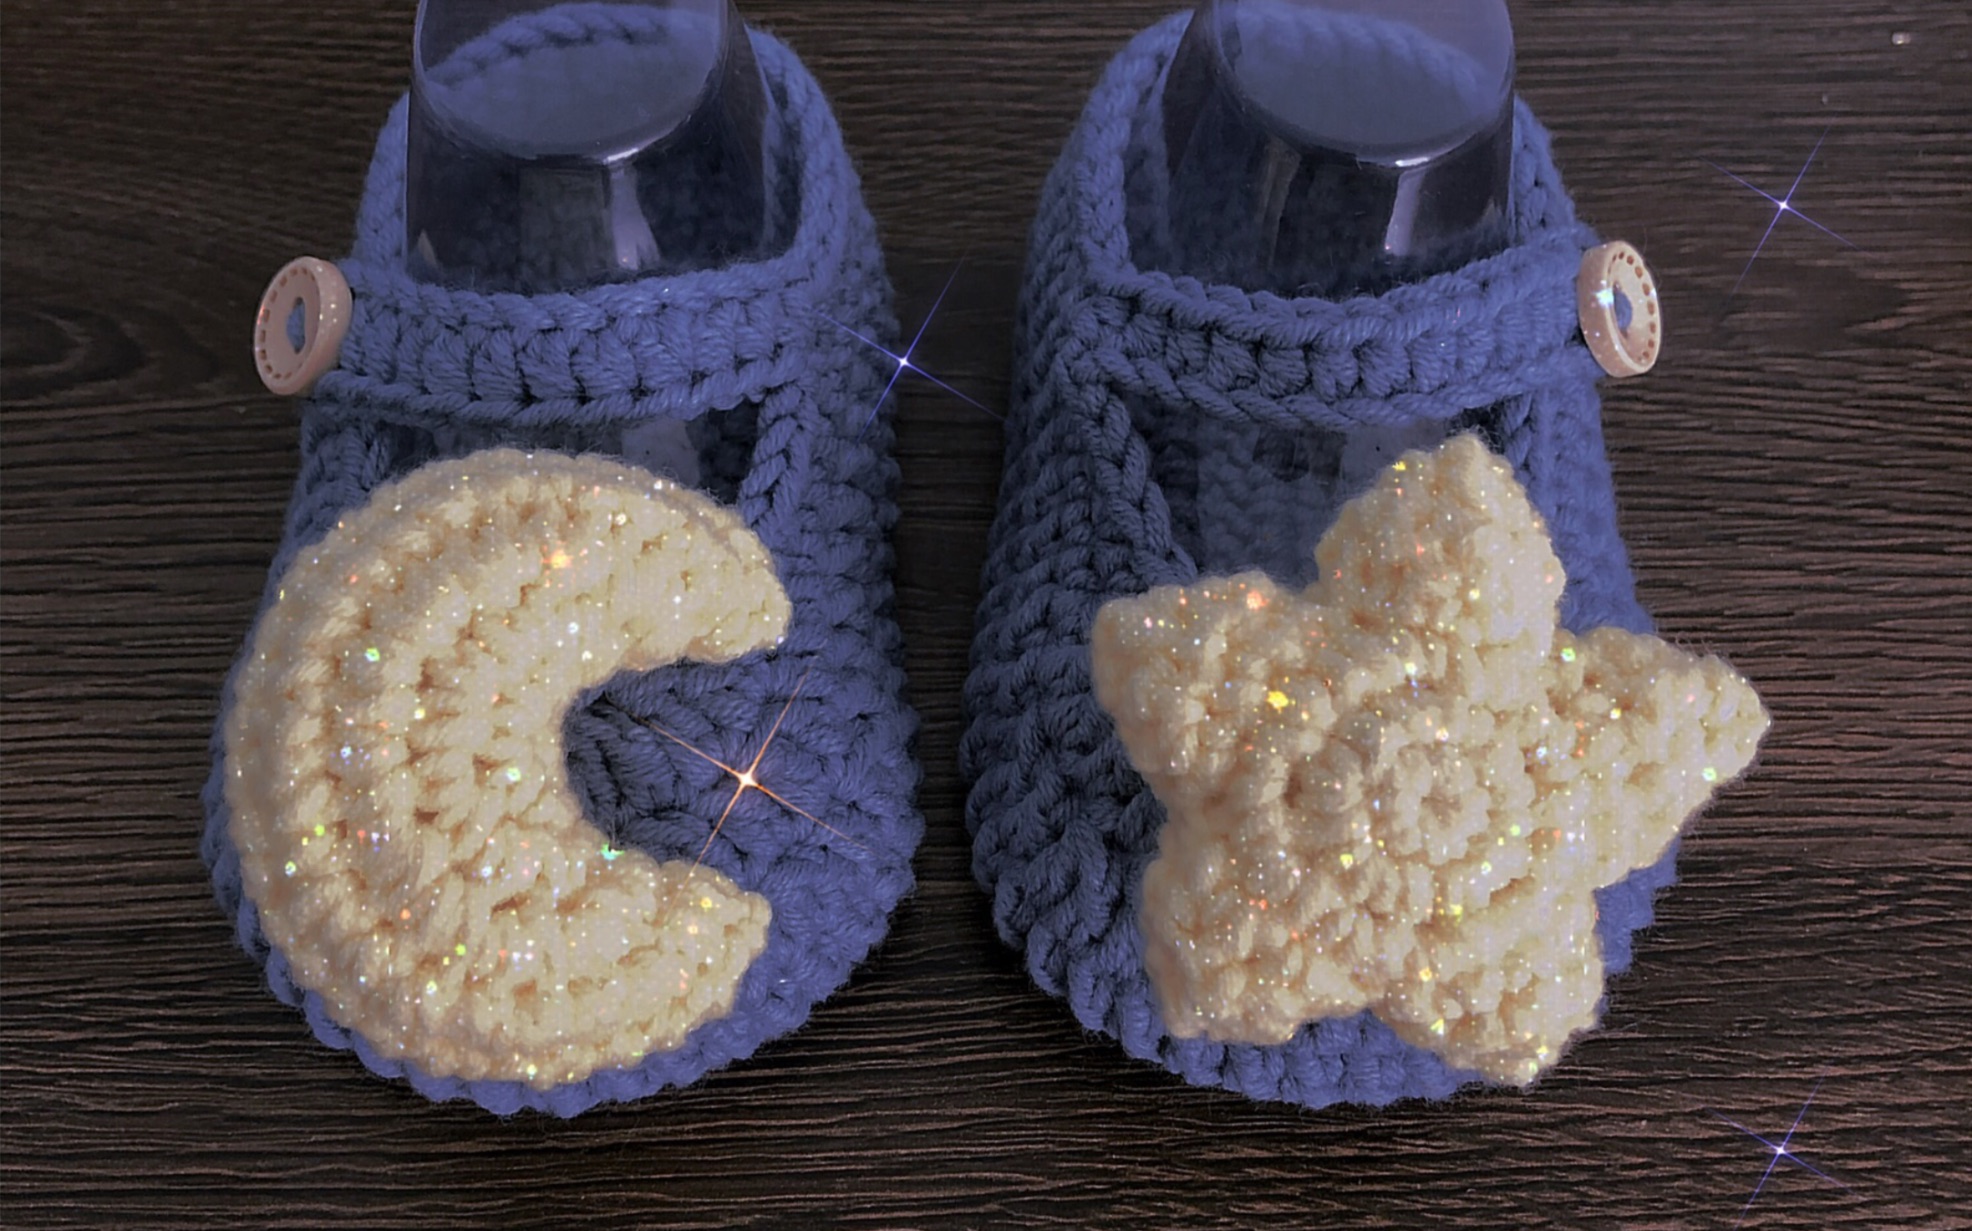 第15集-贝壳鞋0-3个月宝宝鞋钩针编织教程视频 - 哔哩哔哩